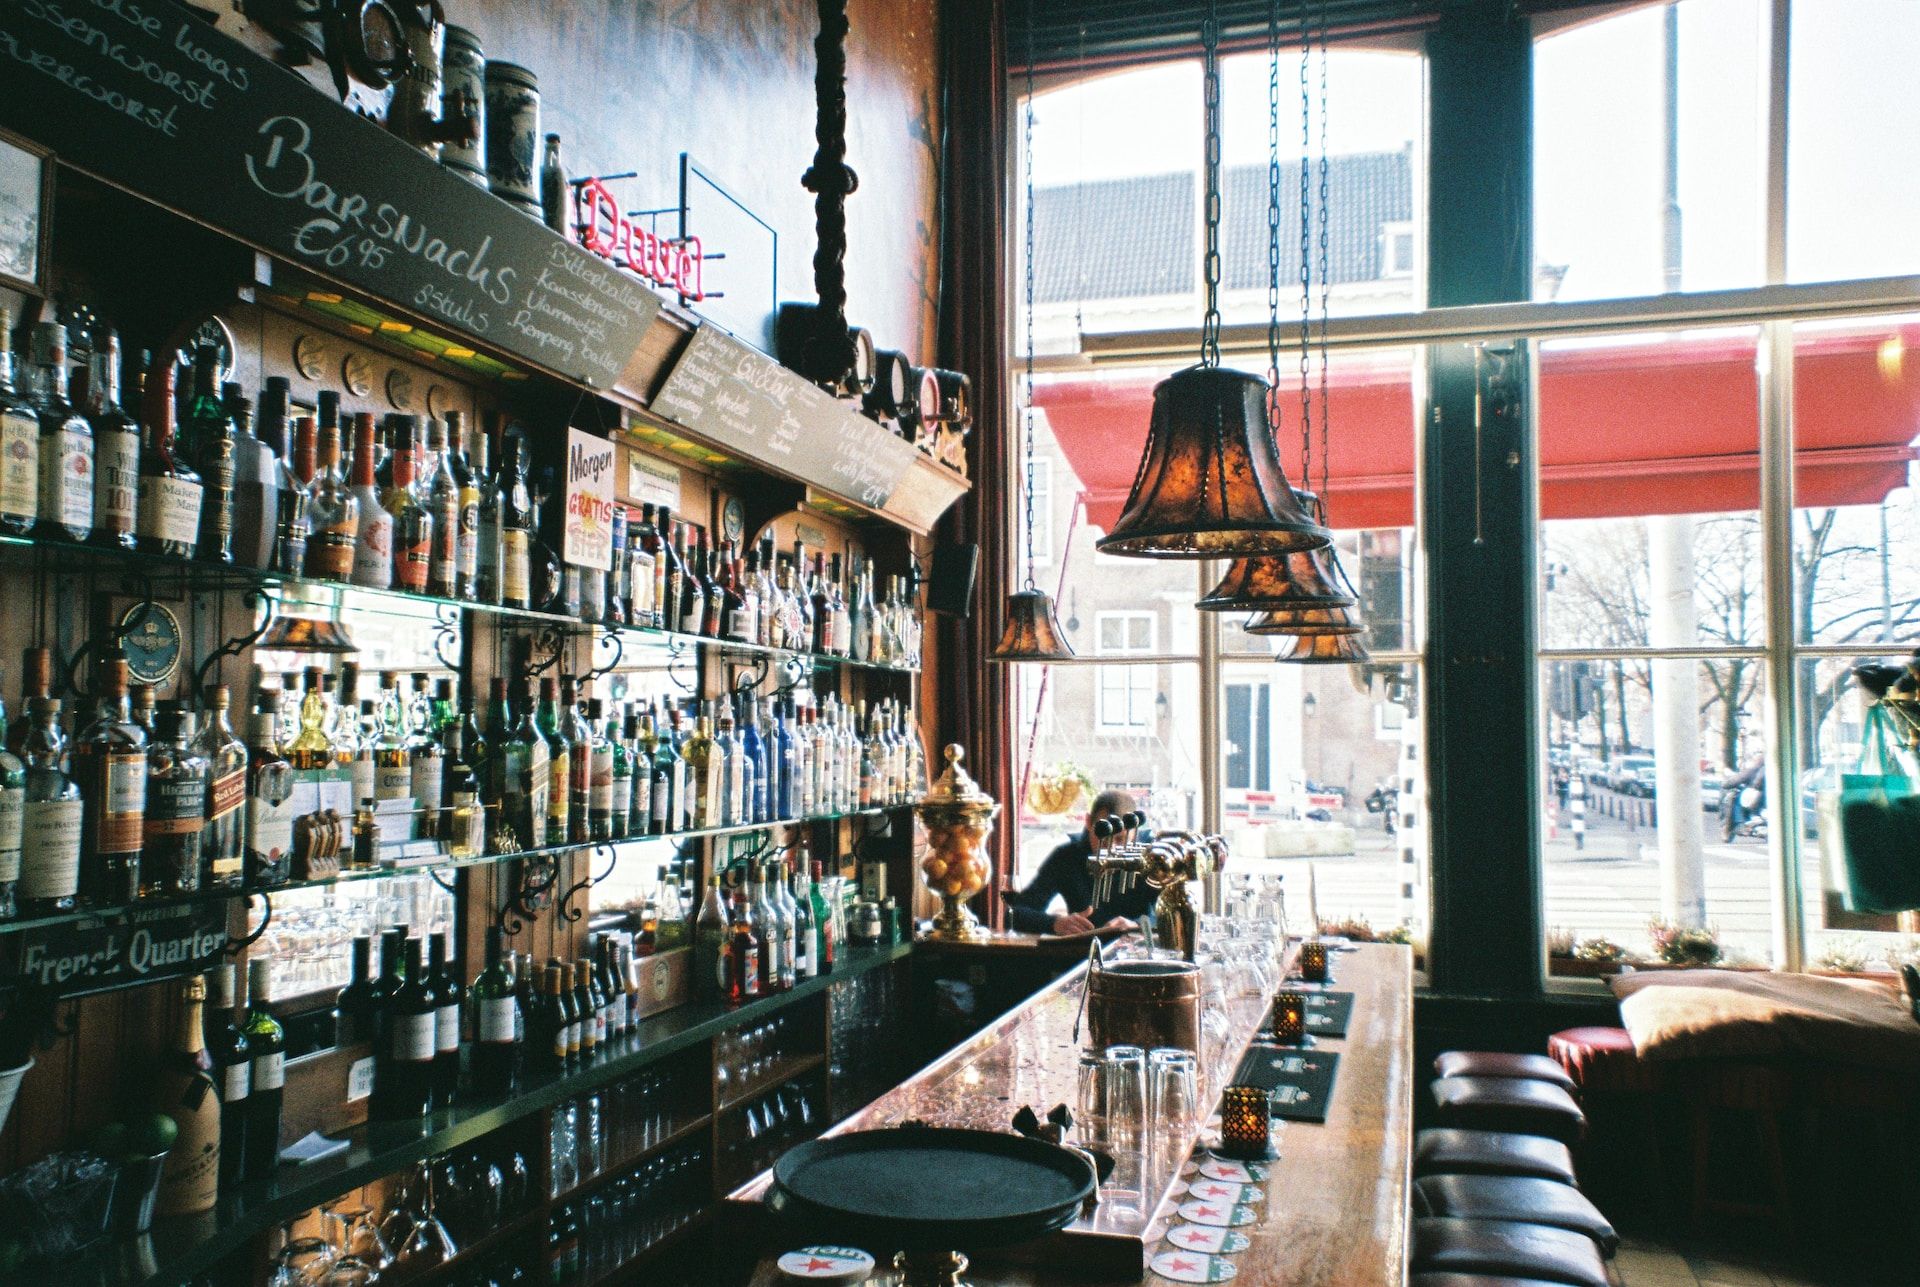 A bar in Amsterdam